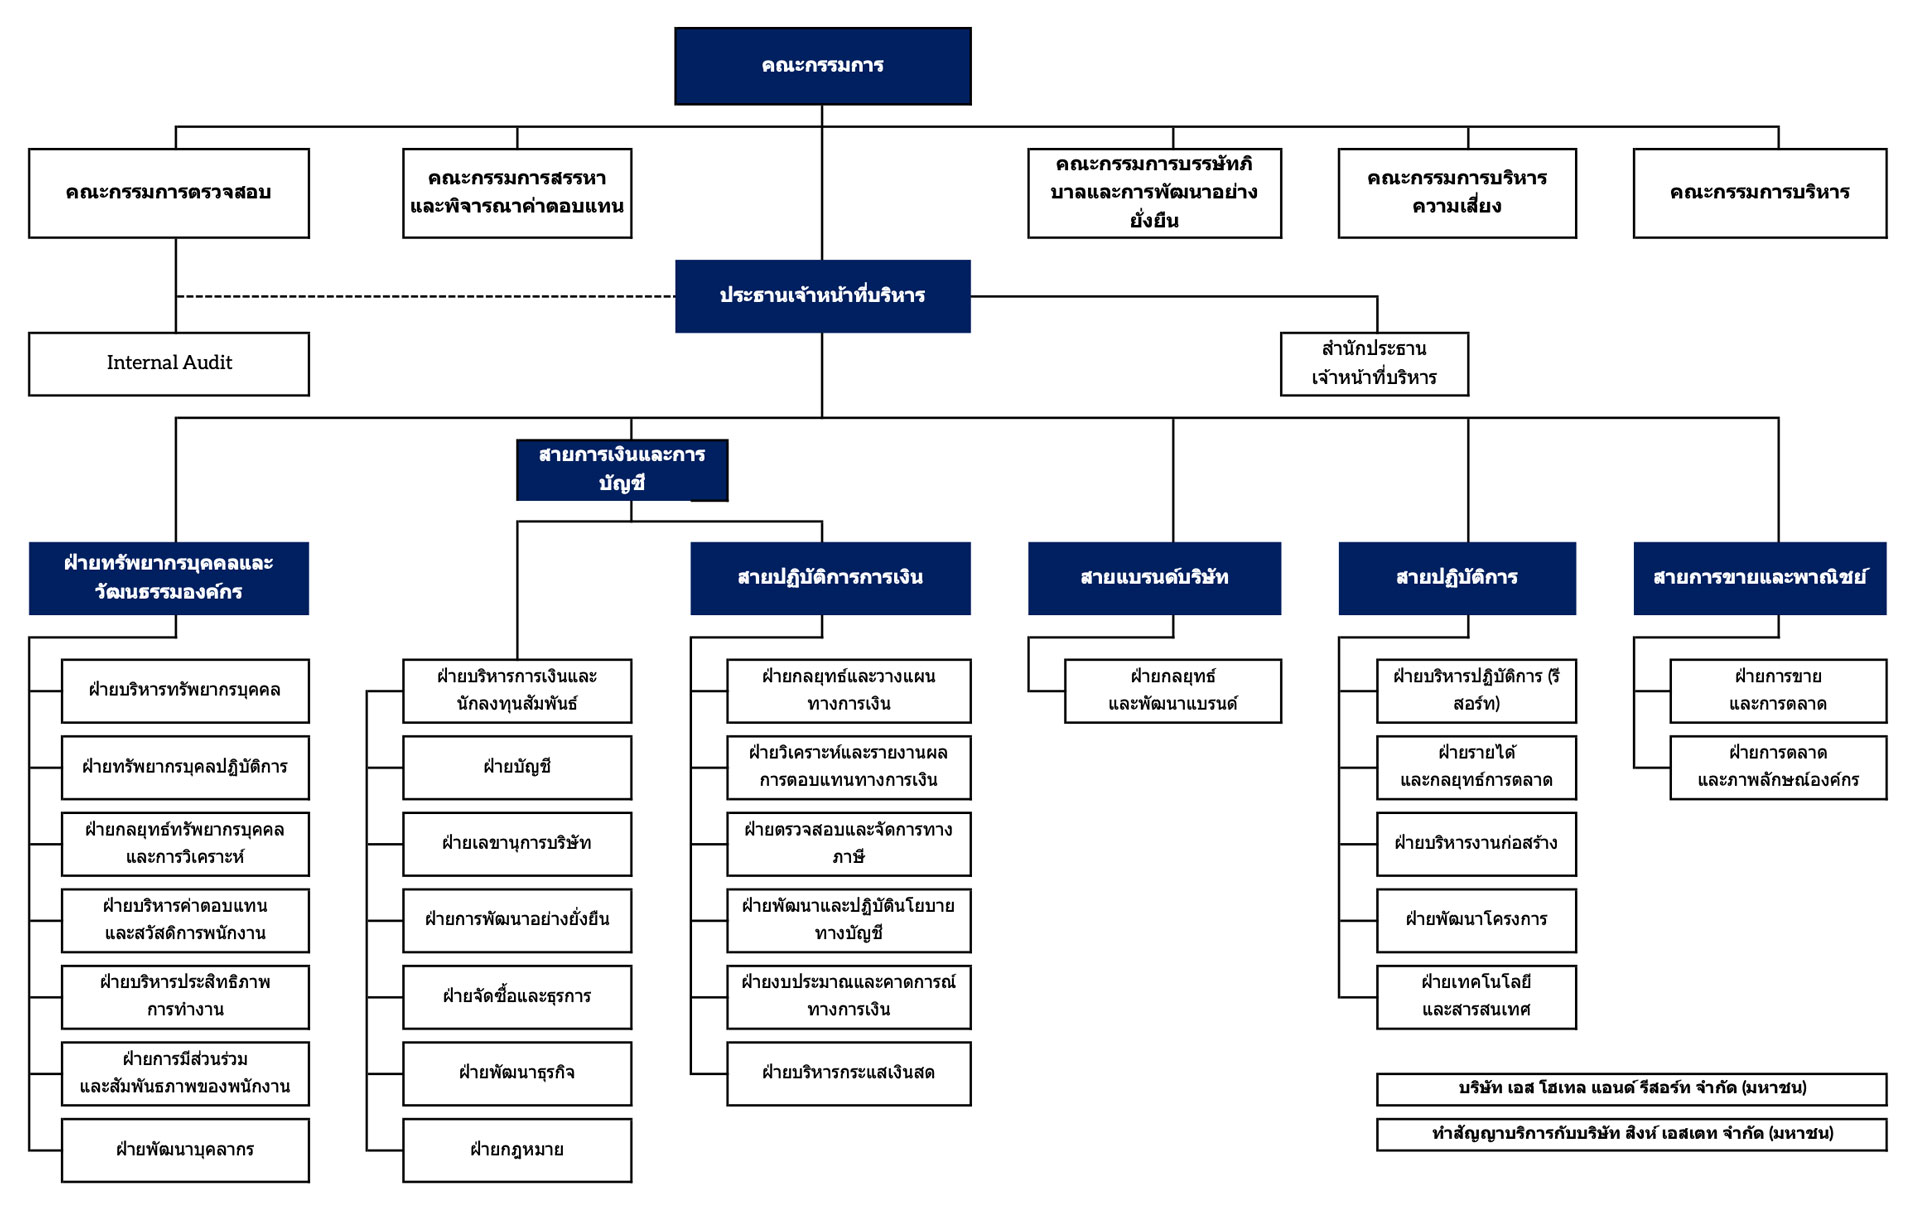 SHR Organization Structure